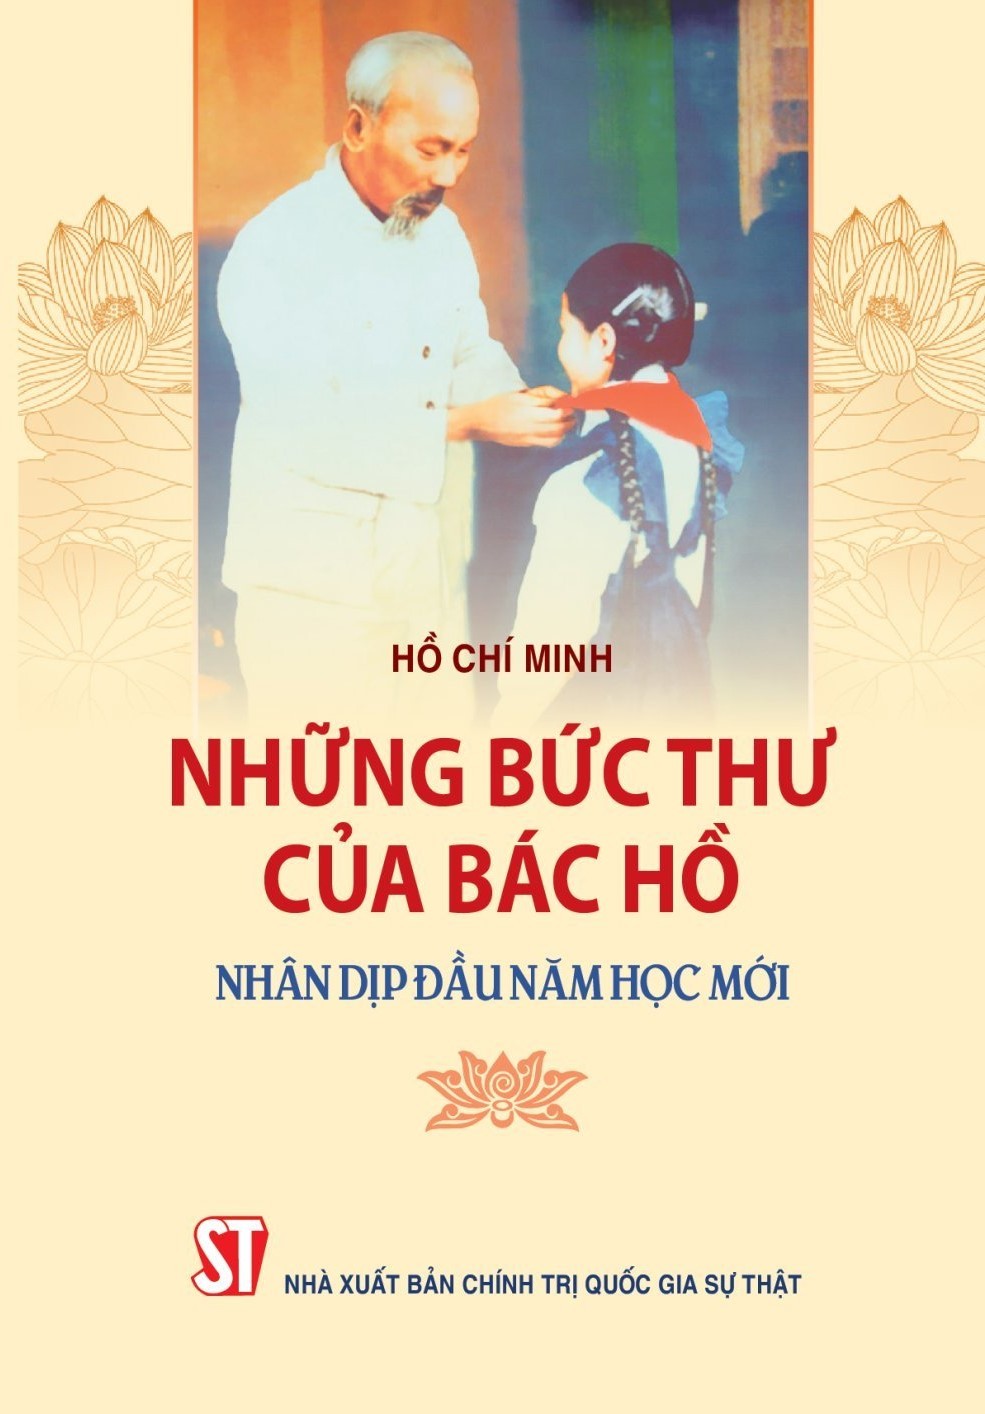 nhung-buc-thu-cua-bac-ho-nhan-dip-dau-nam-hoc-moi-chinhtrivaphattrien-1693880731.jpg